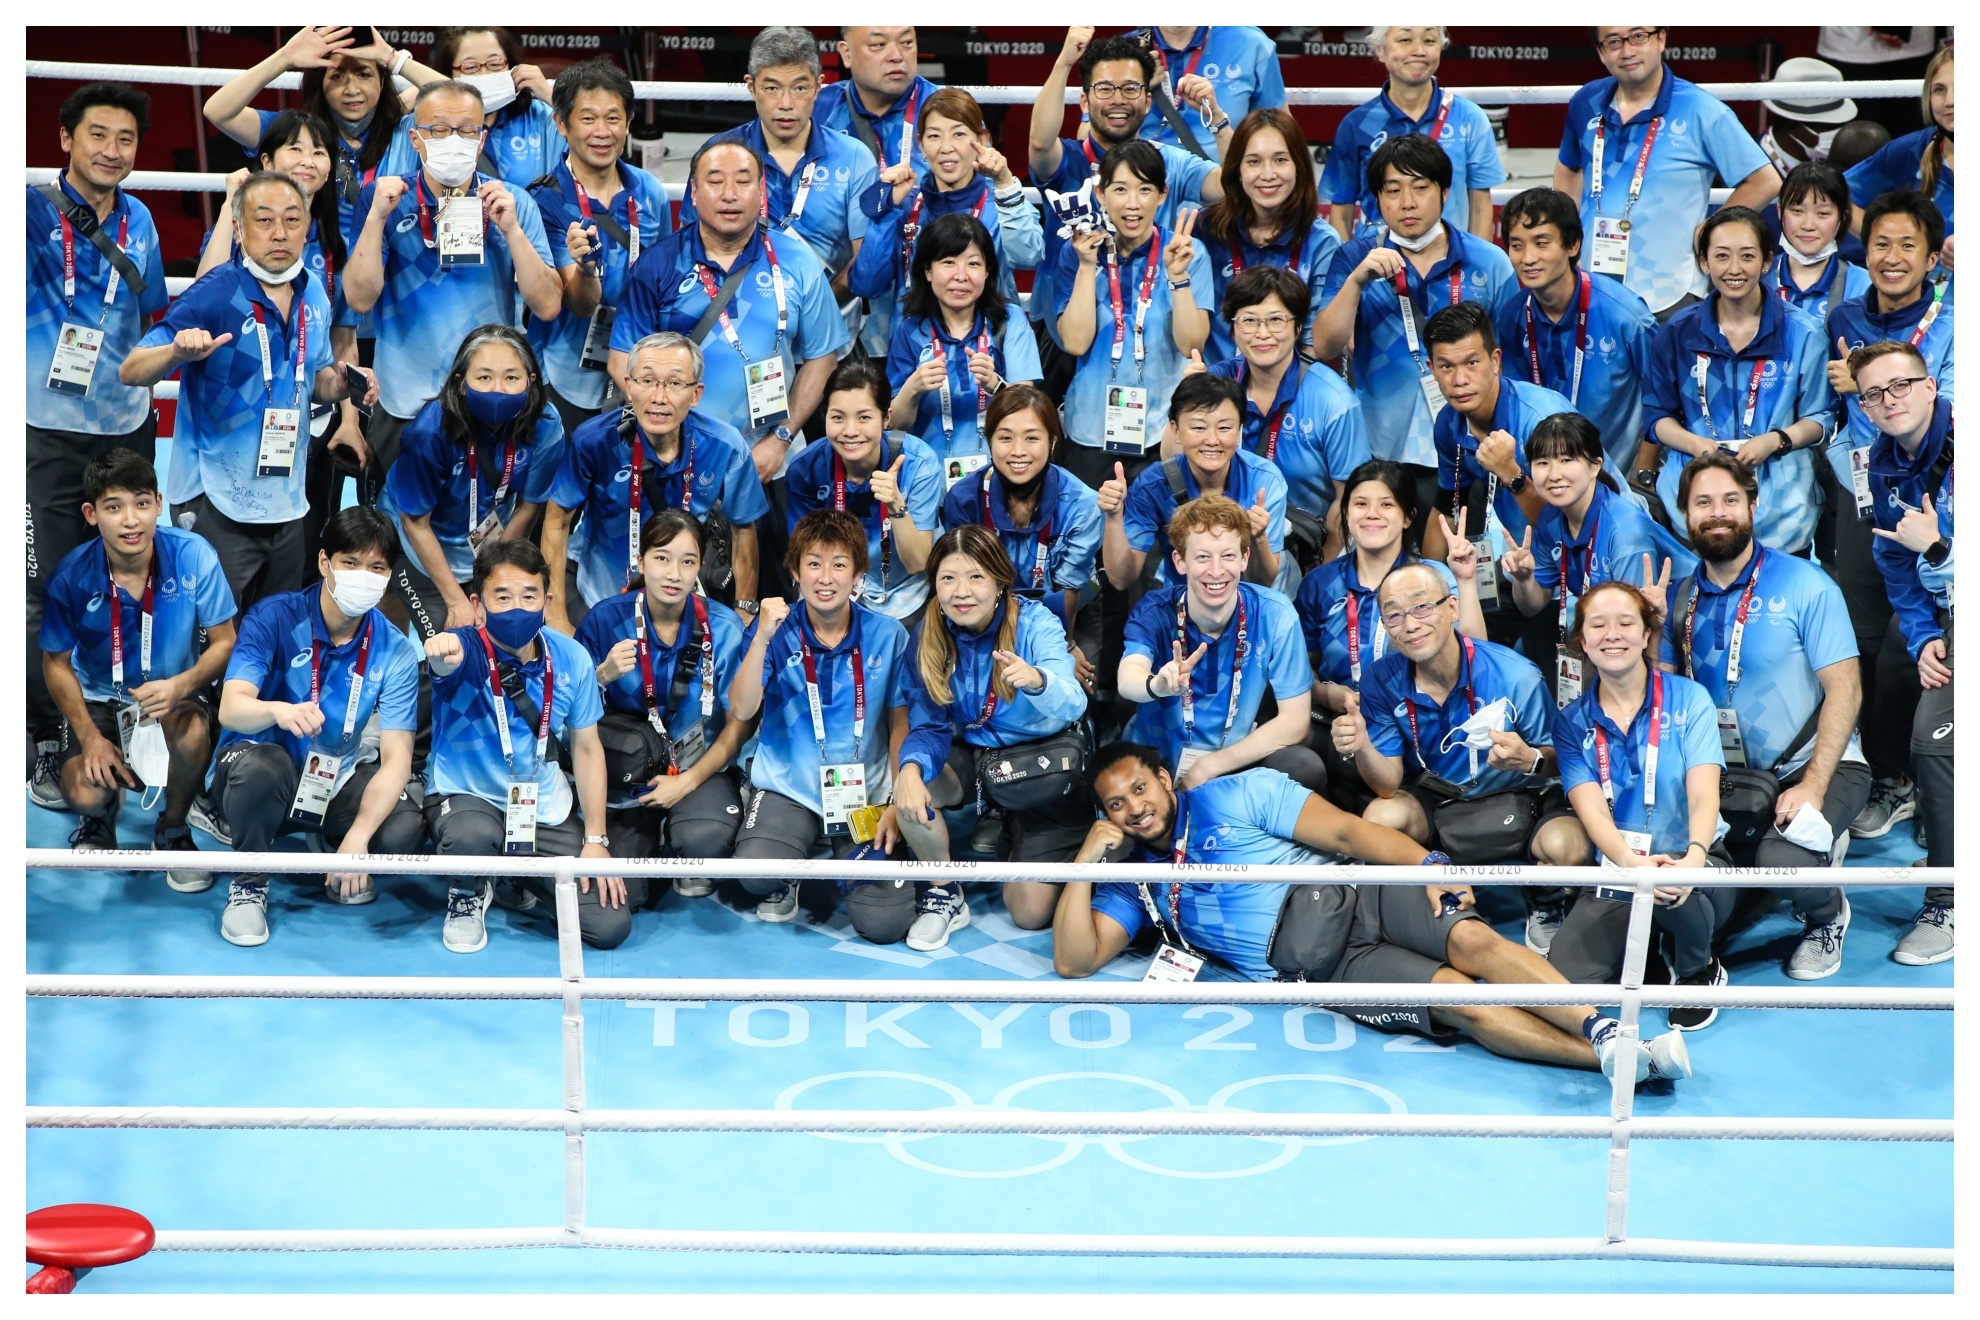 Voluntarios de los Juegos de Tokio posan en el ring a la conclusión de los mismos.